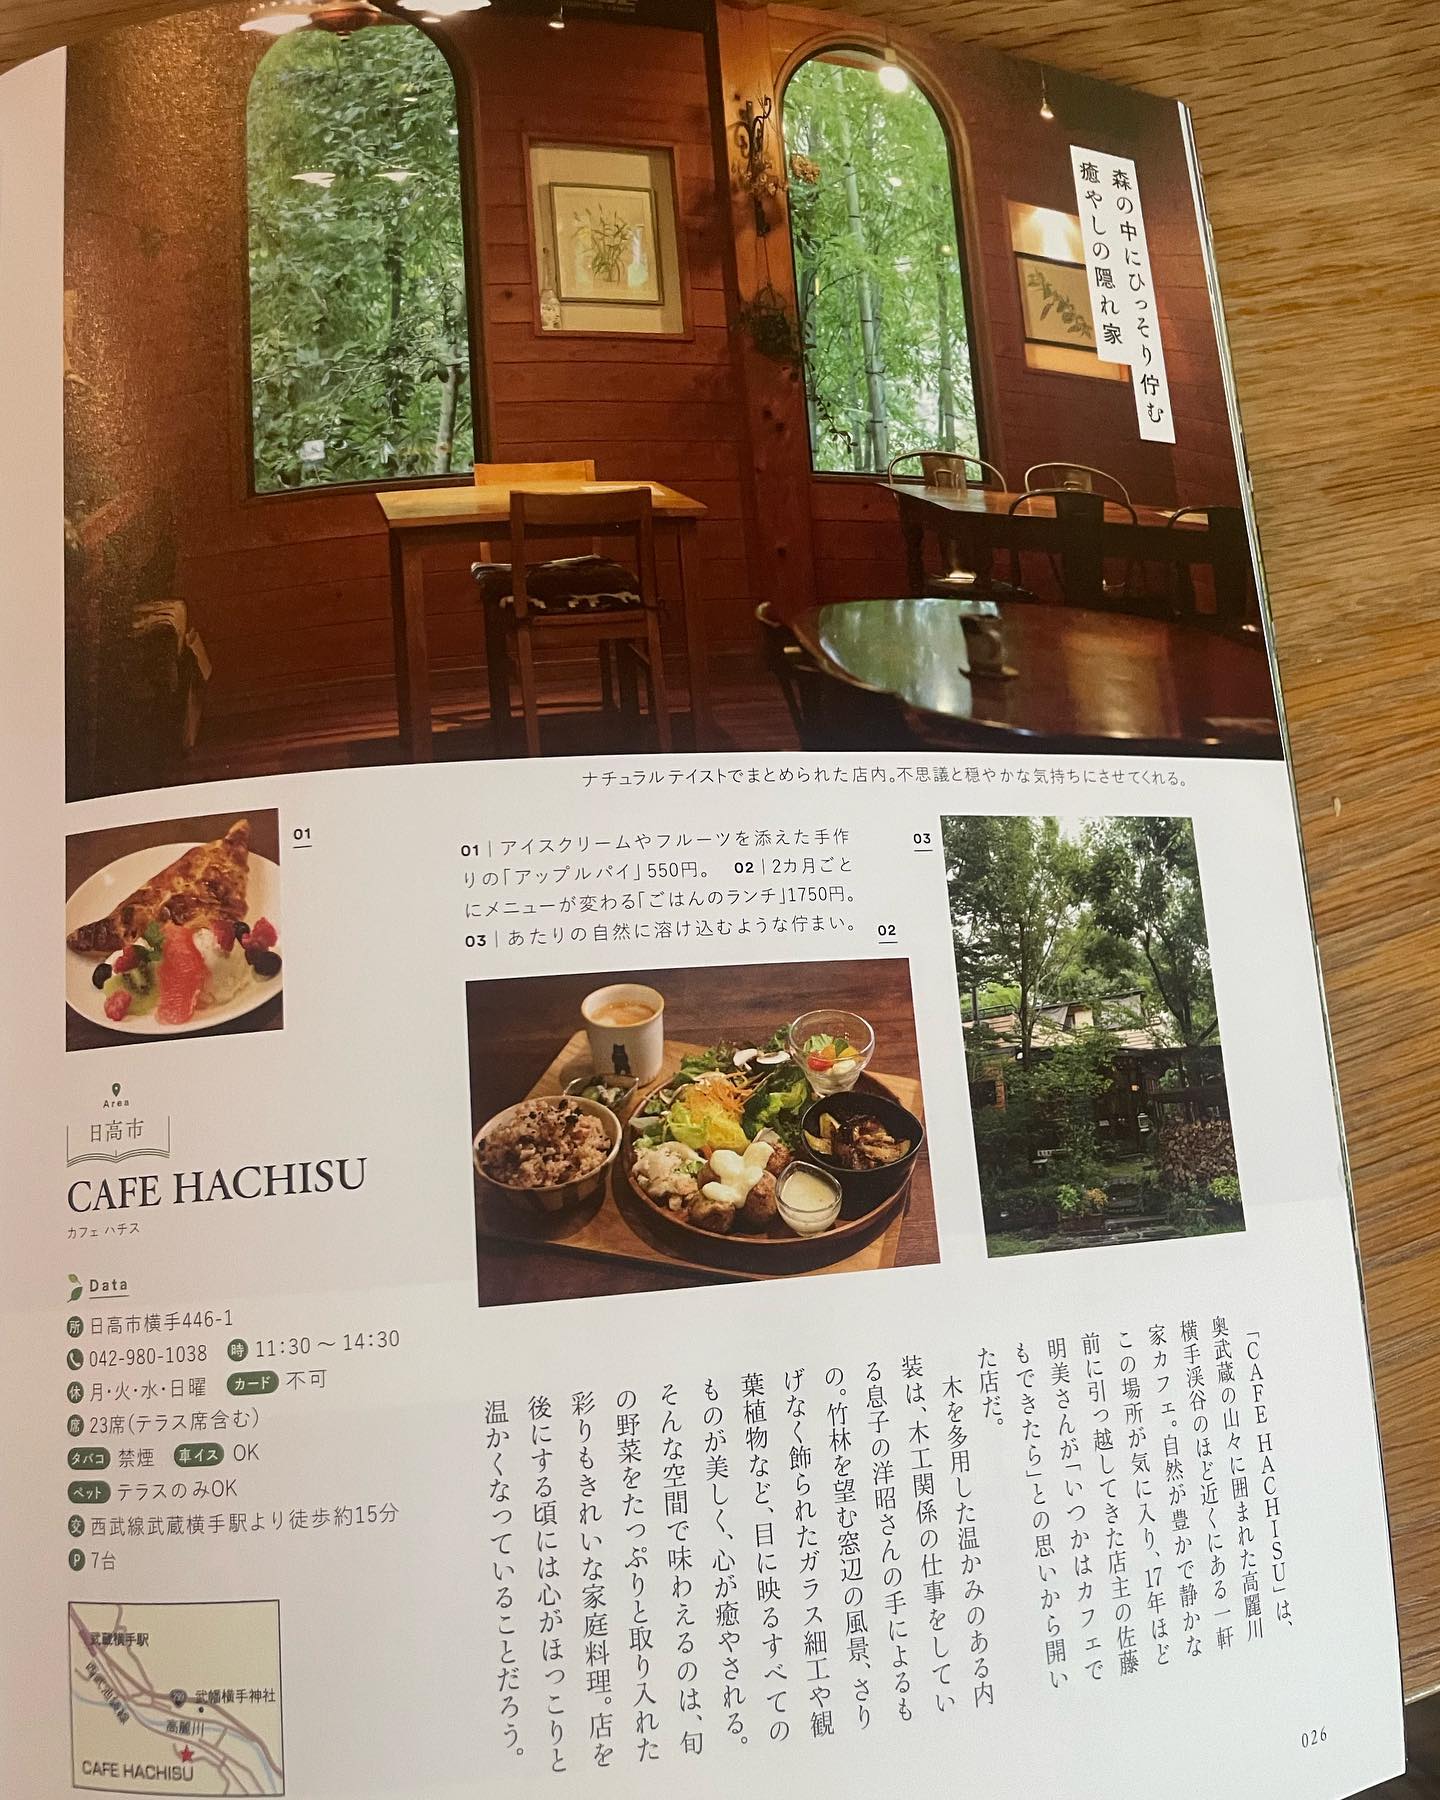 ぴあＭＯＯＫさんの(森のカフェ緑のレストラン埼玉版)に、載せていただきました。自然に囲まれた、場所が好きな方には、もってこいの雑誌です。素敵なカフェや、レストランが沢山載っているので、私も、暇を見つけて行ってみたくなりました。 #森のカフェ #緑のレストラン #ぴあＭＯＯＫ  #カフェハチス #日高市カフェ